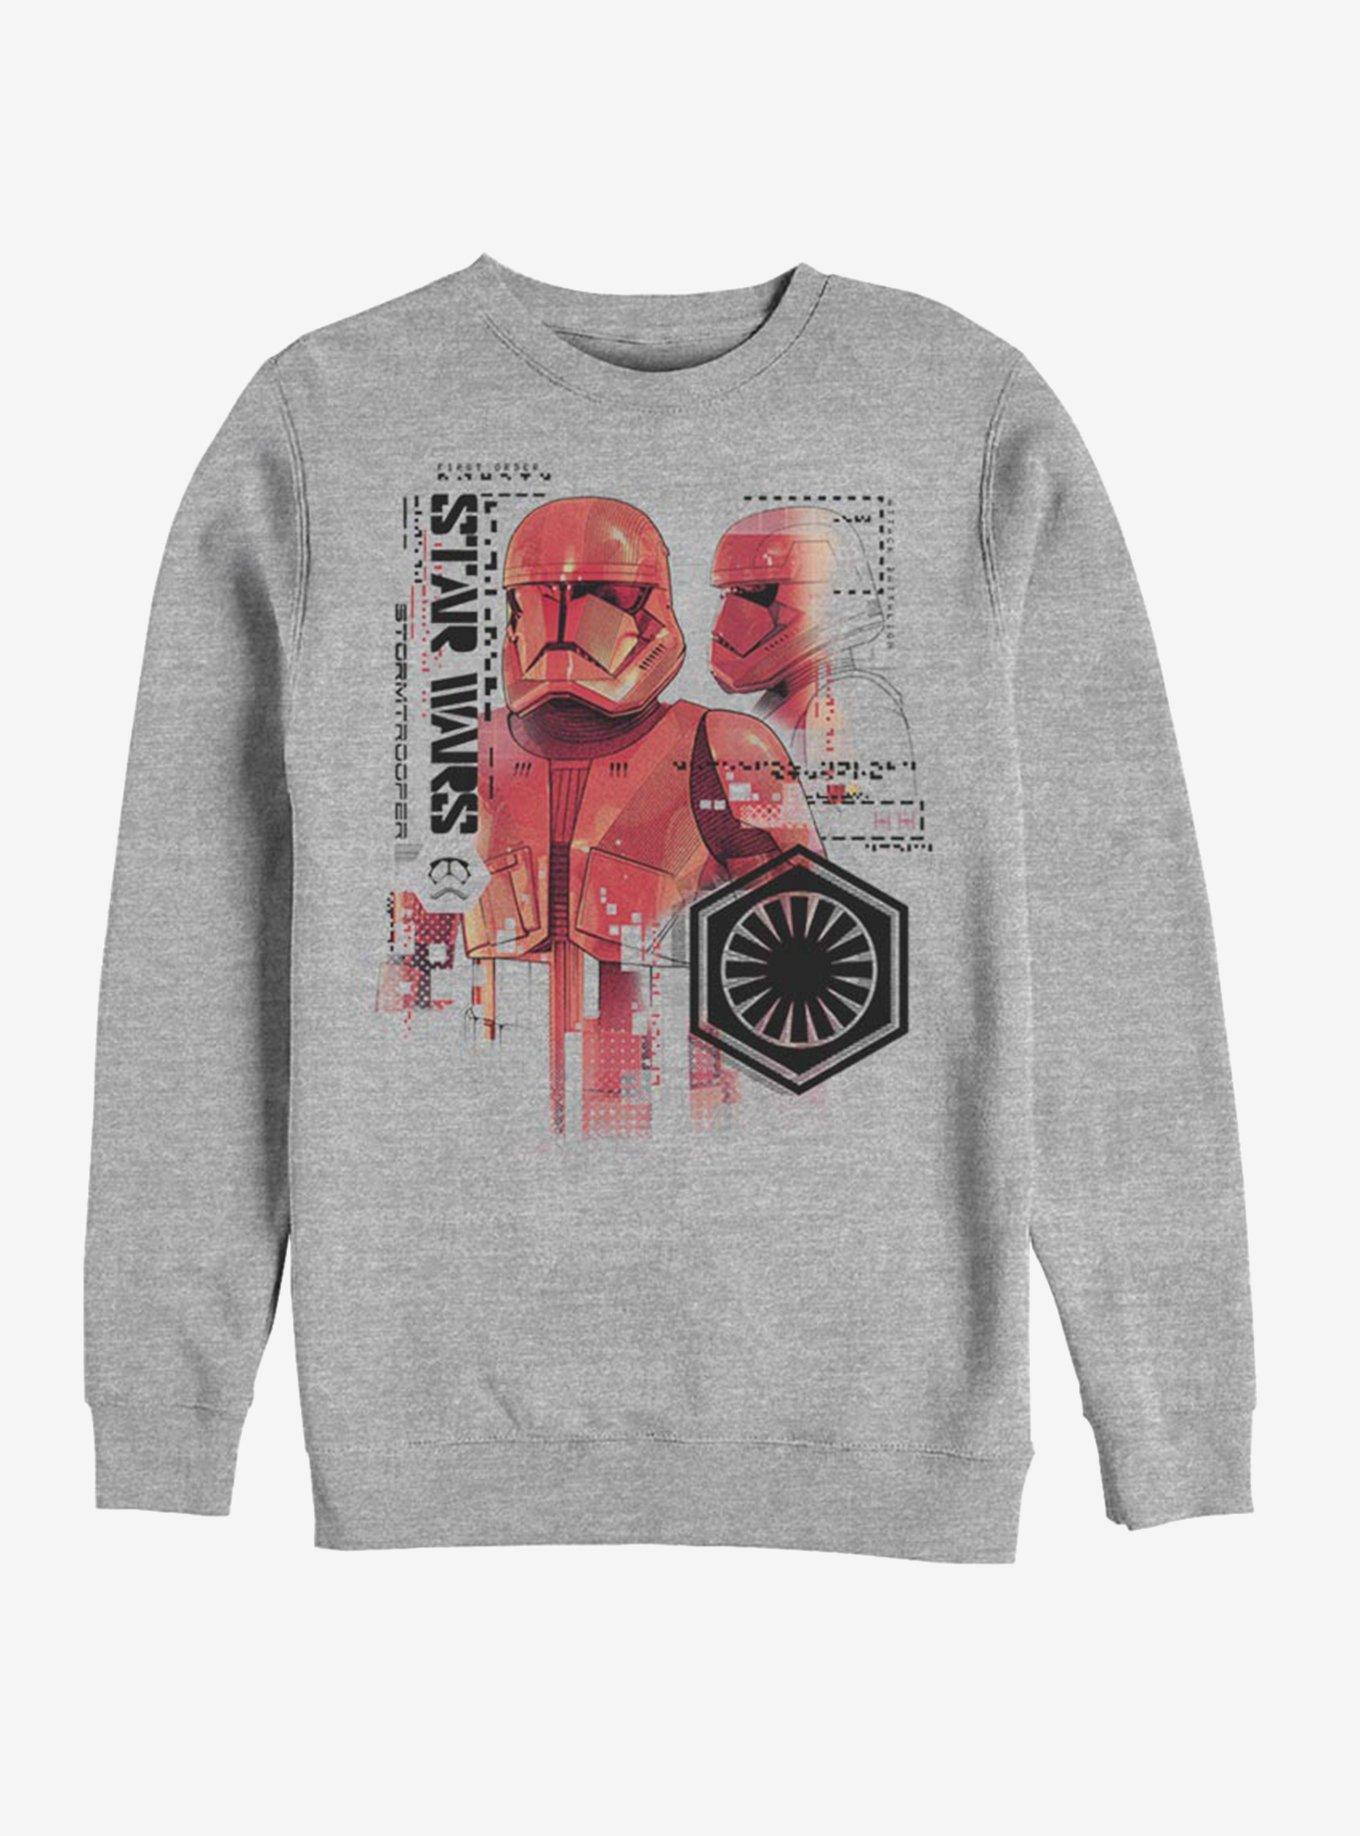 Star Wars Episode IX Rise of Skywalker Red Trooper Schematic Sweatshirt, , hi-res